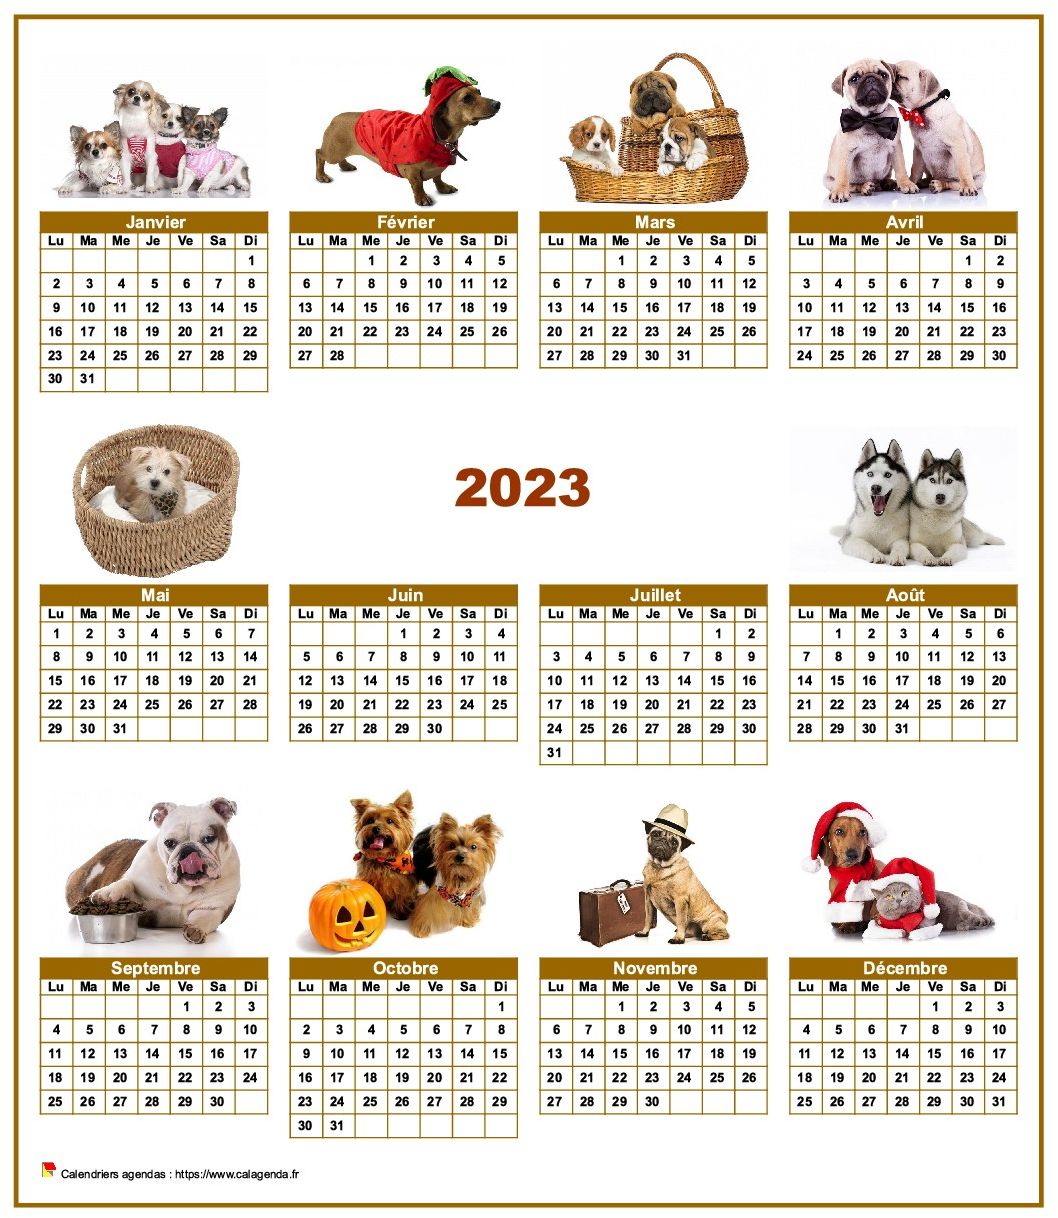 Calendrier 2023 annuel spécial 'chiens' avec 10 photos